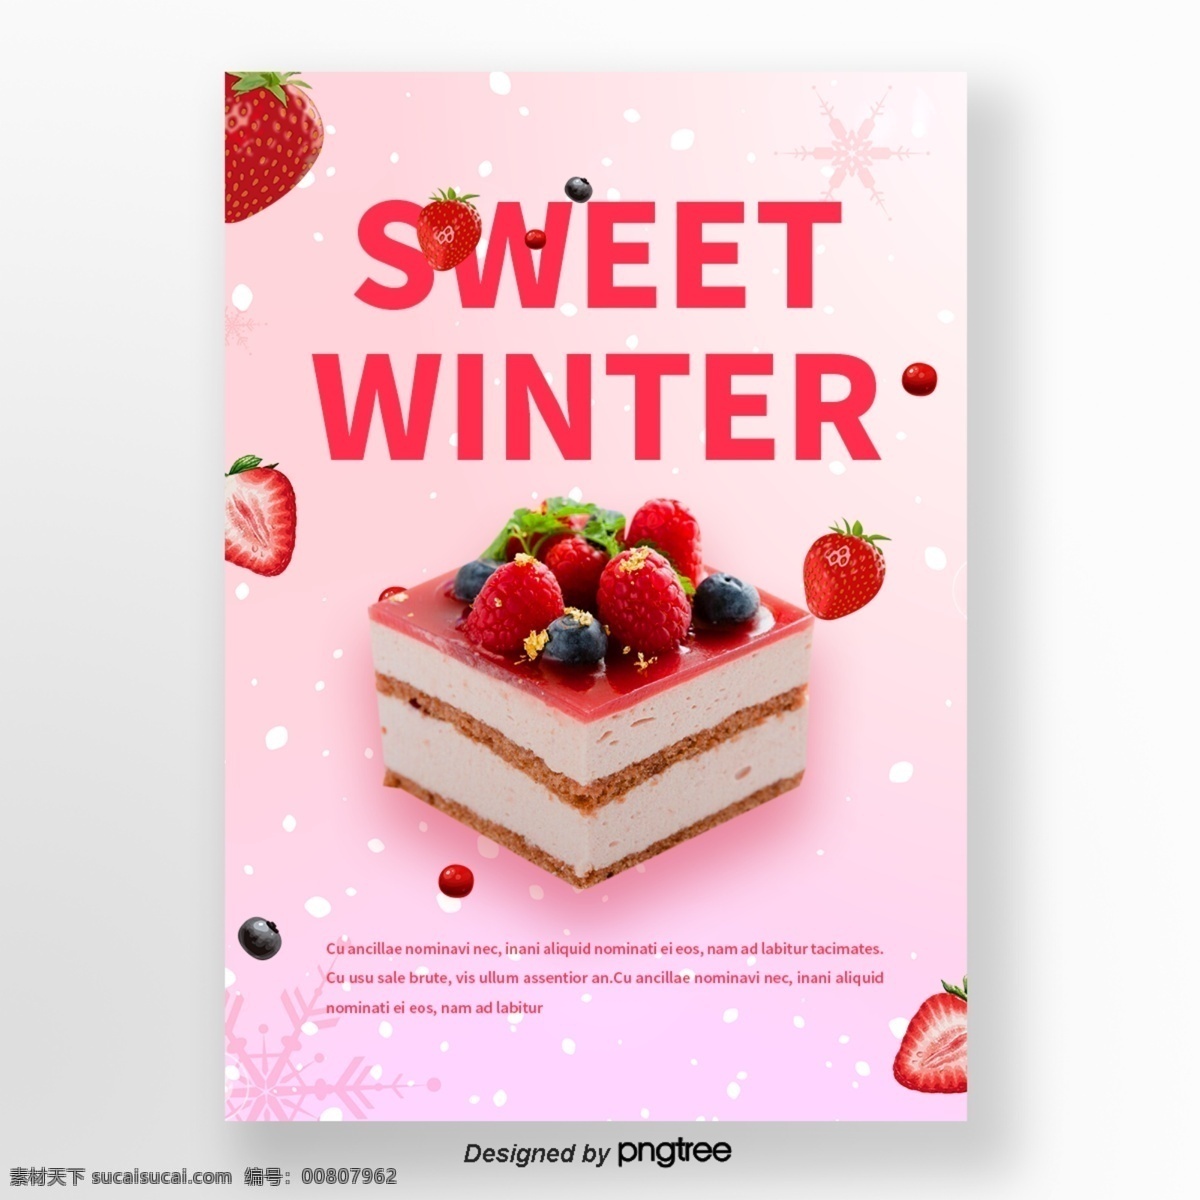 粉色 雪花 草莓 蓝莓 蛋糕 咖啡 冬季 甜味 食品 海报 n 冬天 水果 雪花儿 山莓 身高 颜色粉色